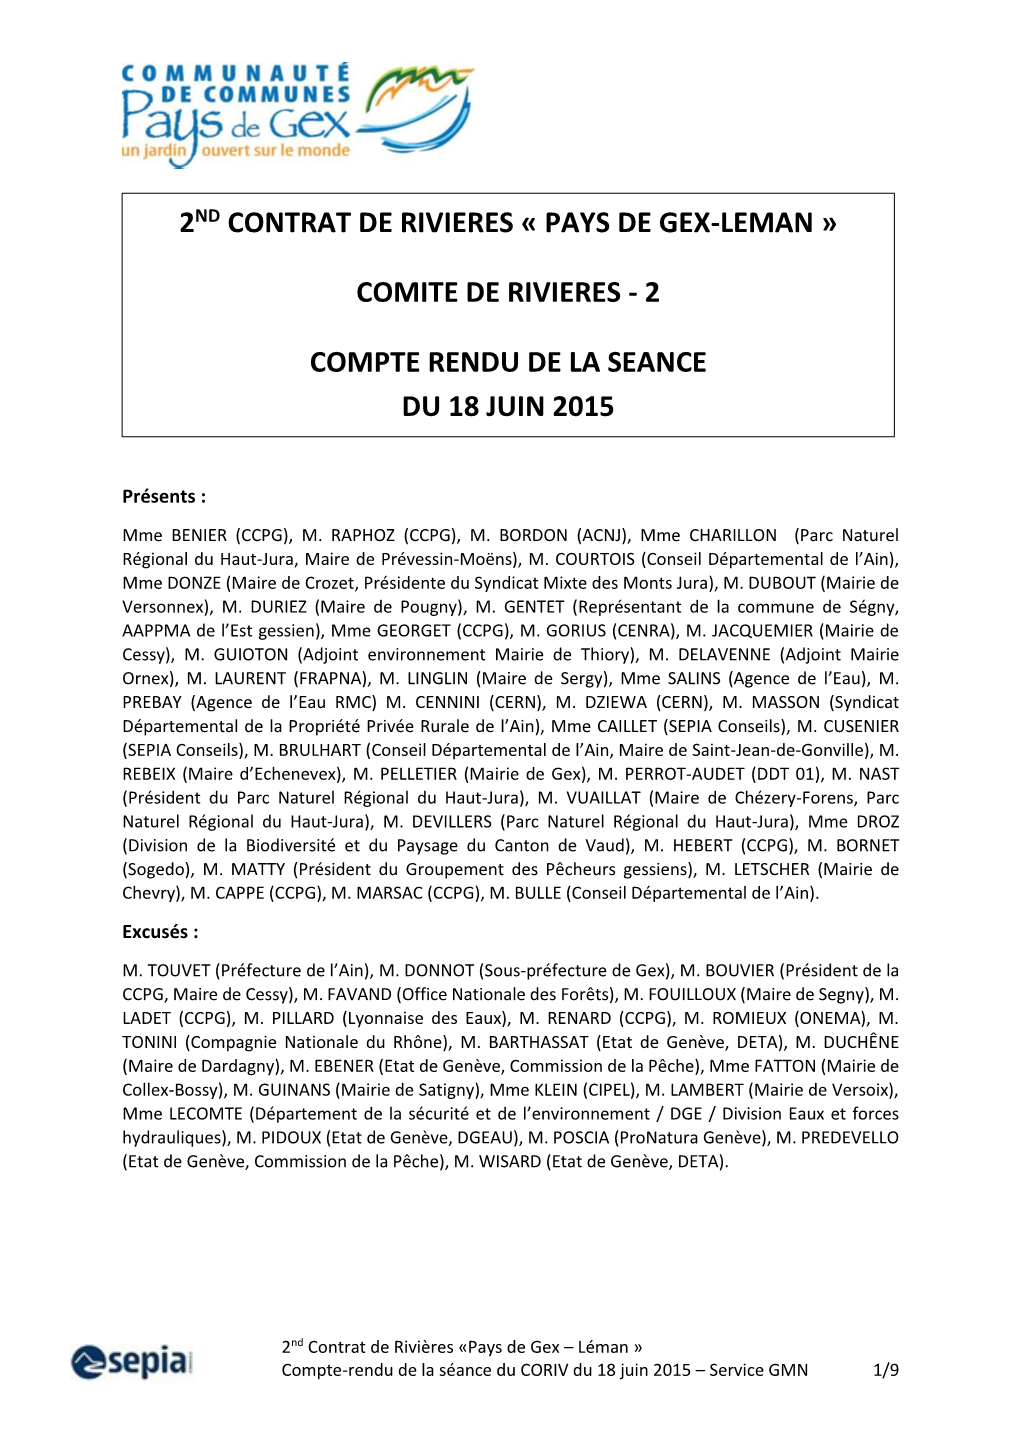 2Nd Contrat De Rivieres « Pays De Gex-Leman » Comite